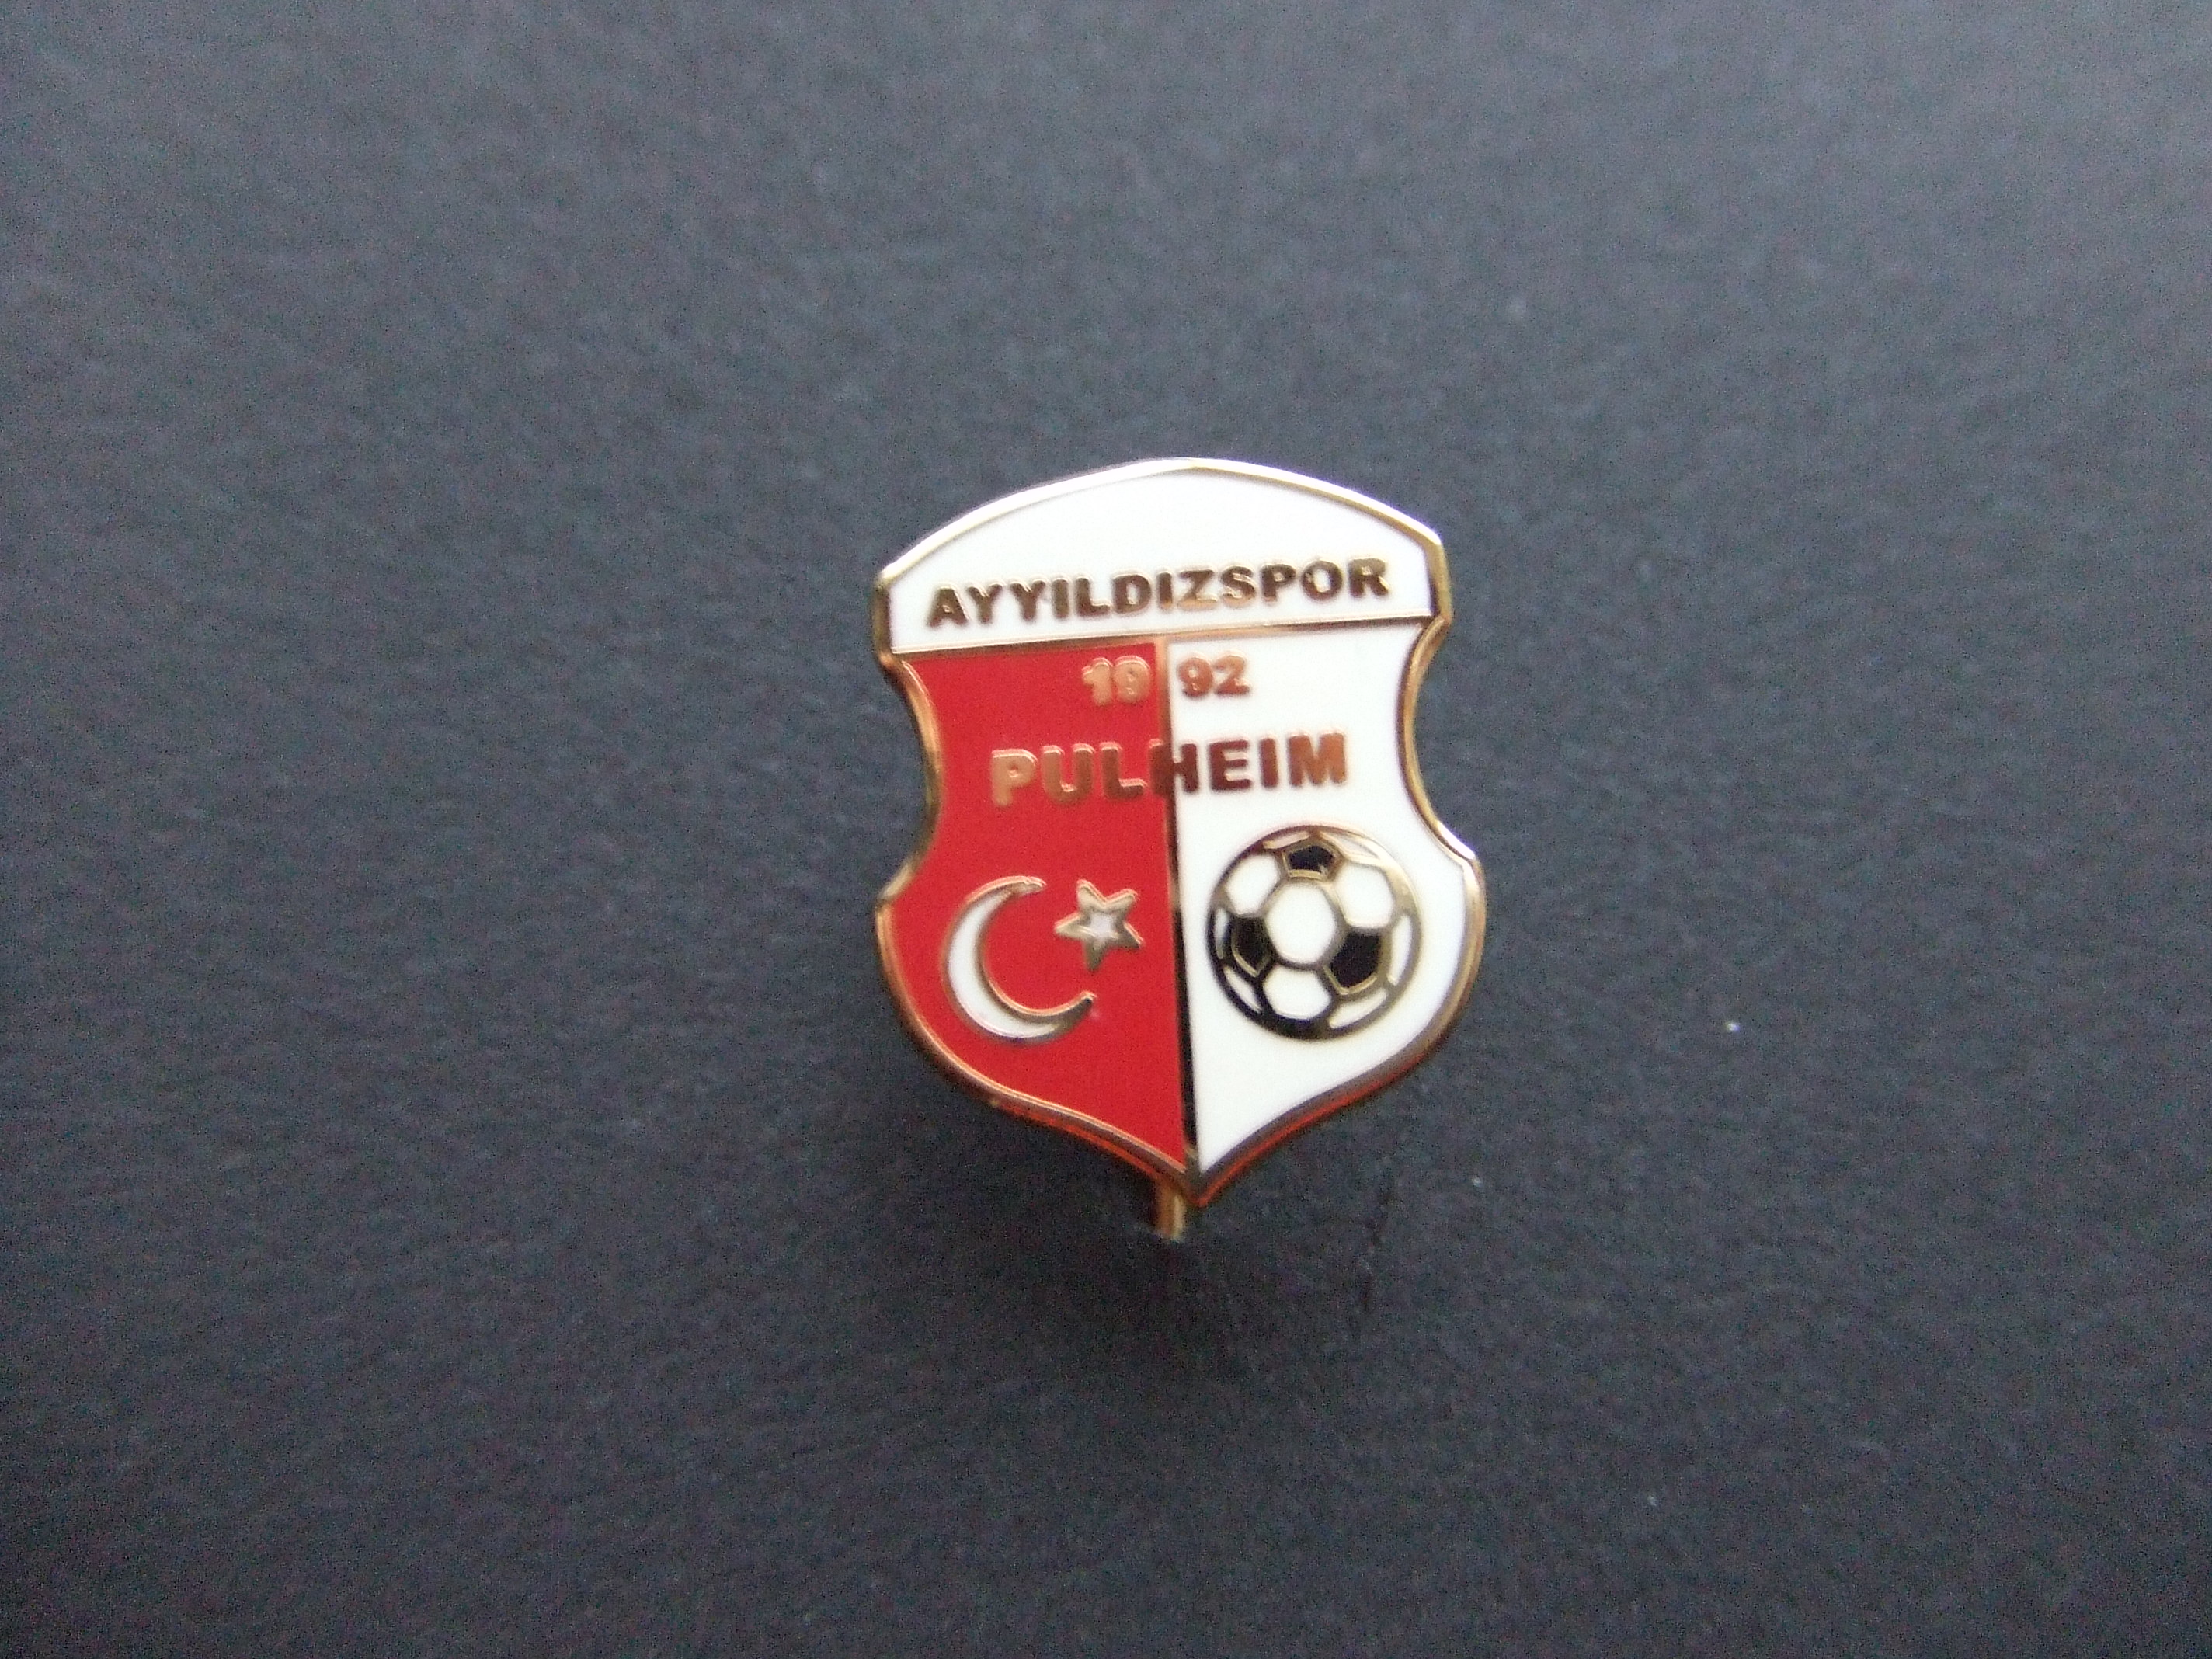 Ayyldizpor Pulheim voetbalclub Duitsland